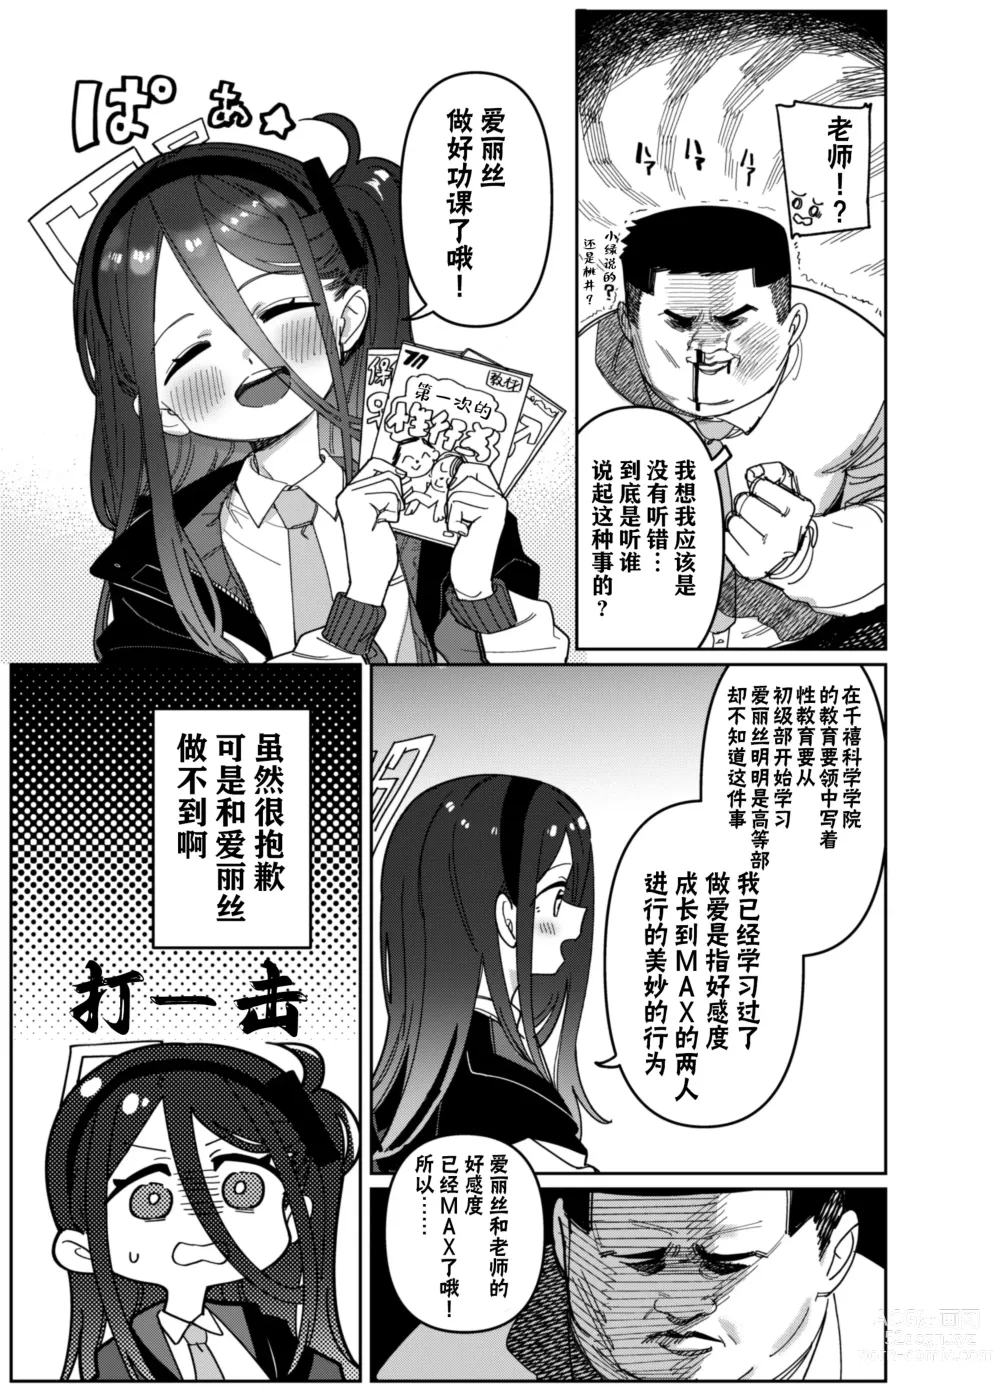 Page 6 of doujinshi 由于老师太弱了 爱丽丝来保护好老师!